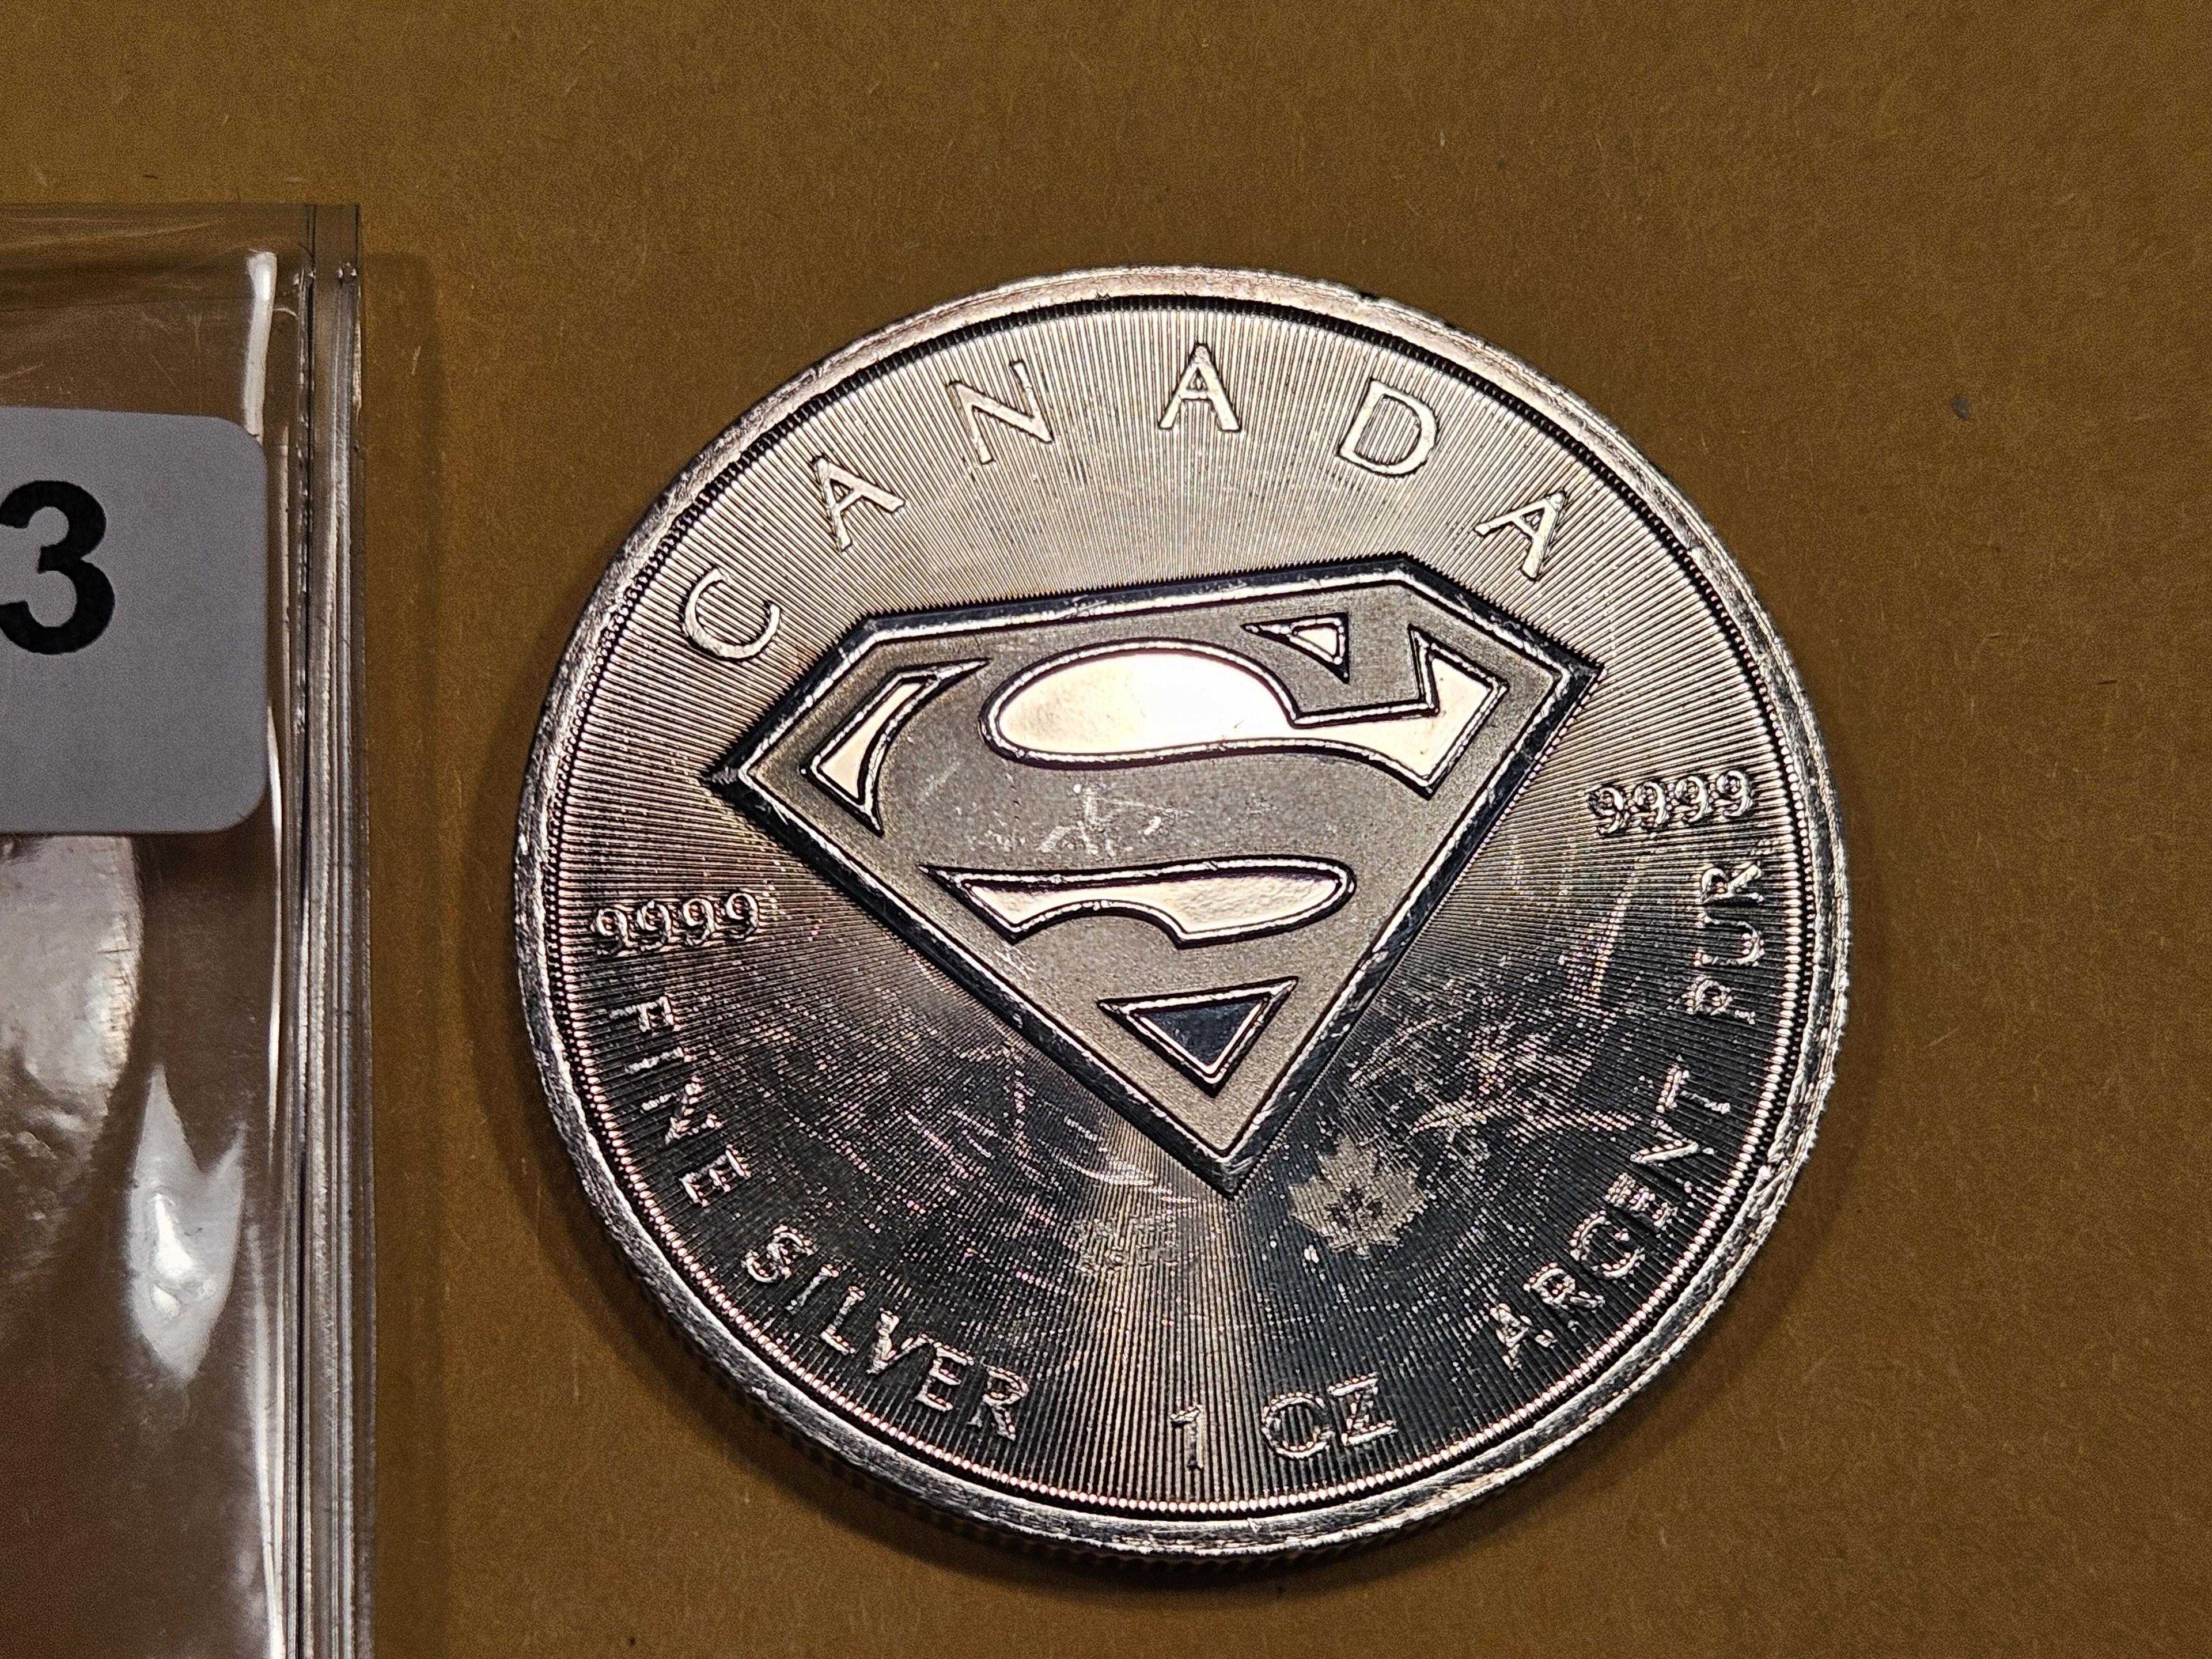 A SUPER Coin!